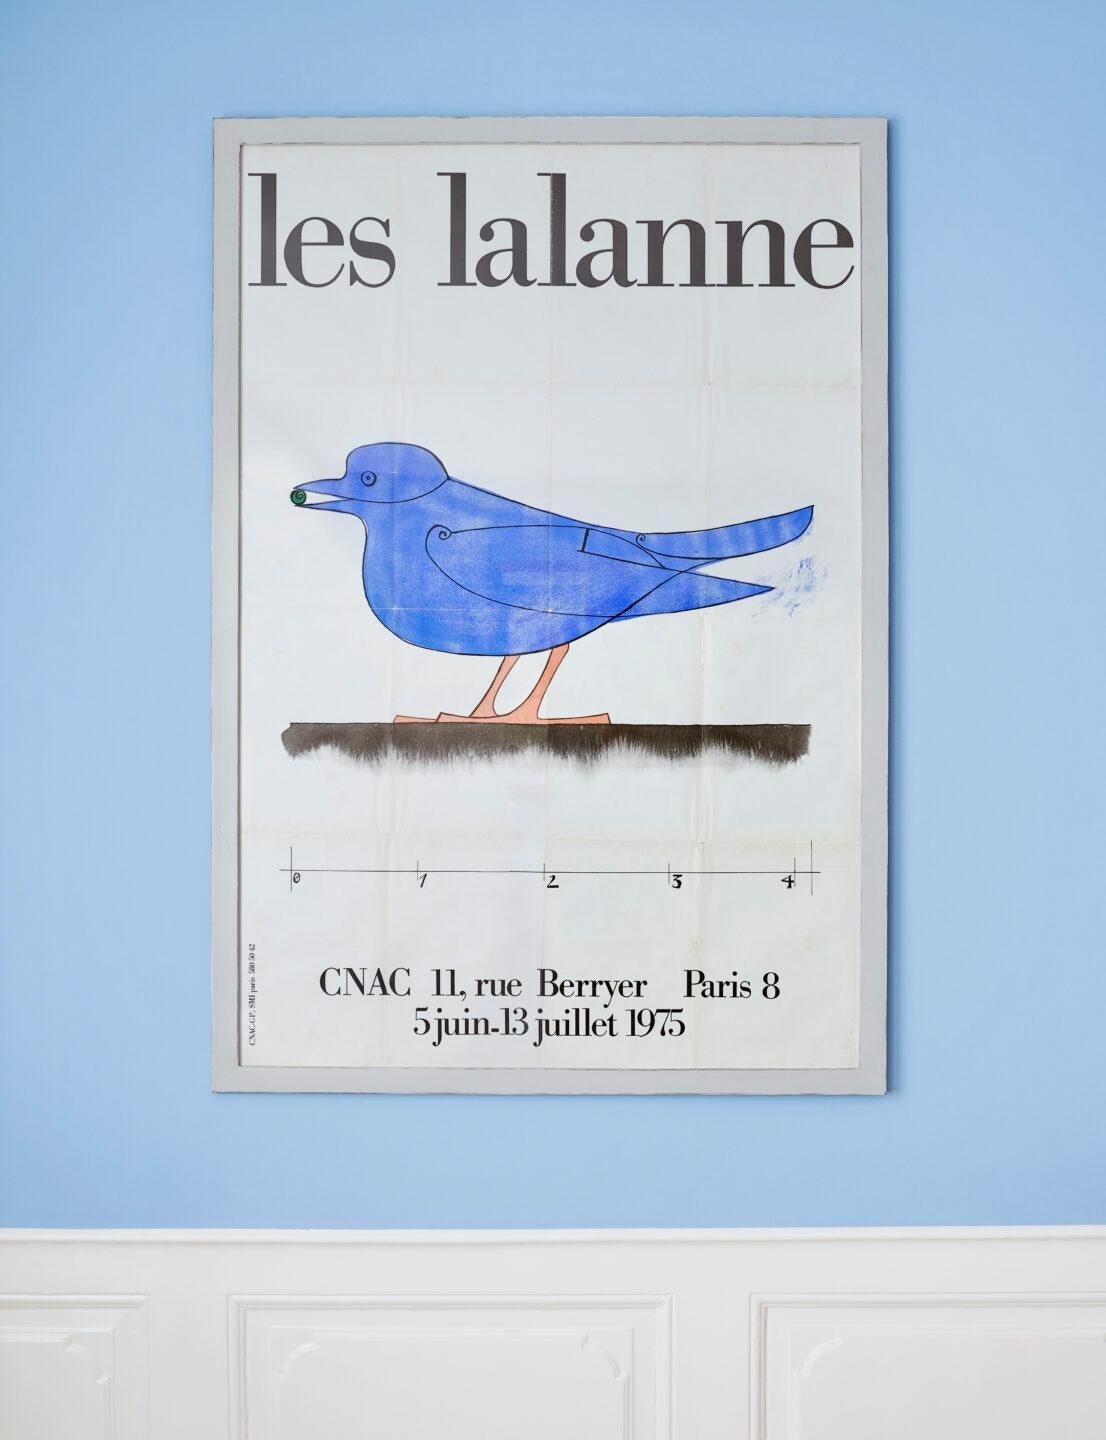 Les Lalanne
France, 1975

Very rare vintage exhibition poster.

Measures: H 158 x W 106 cm.